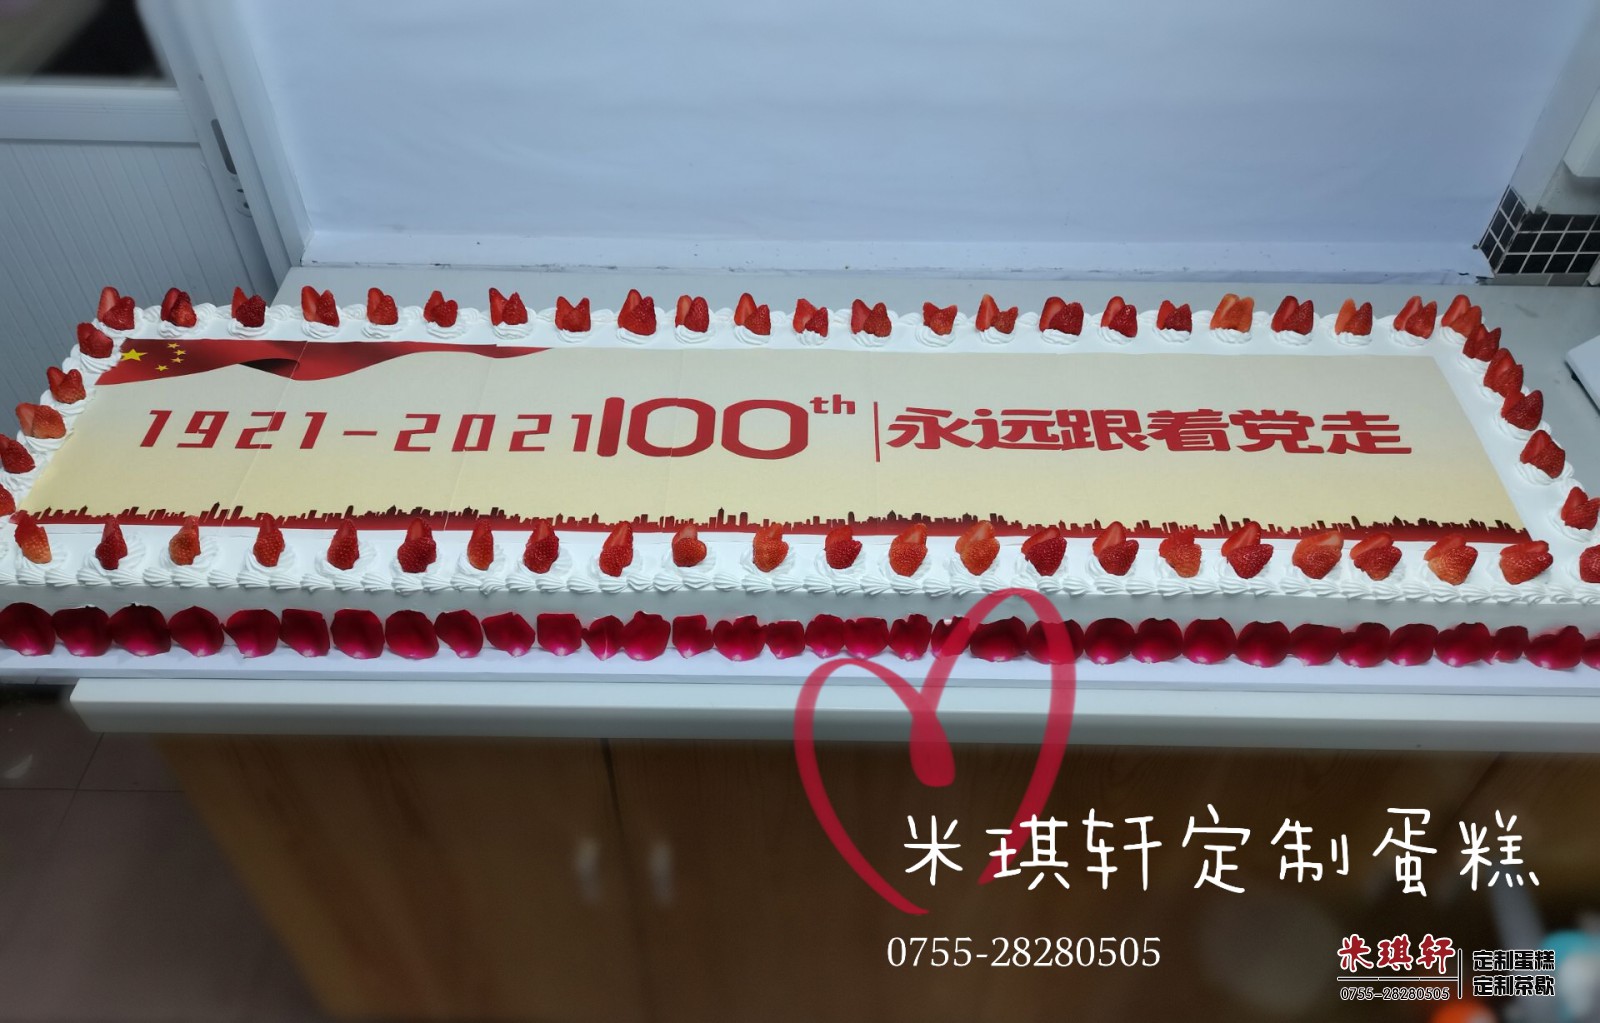 新夏普106周年暨新品发布会定制蛋糕1.0X0.6米-企业定制蛋糕案例-米琪轩：0755-28280505